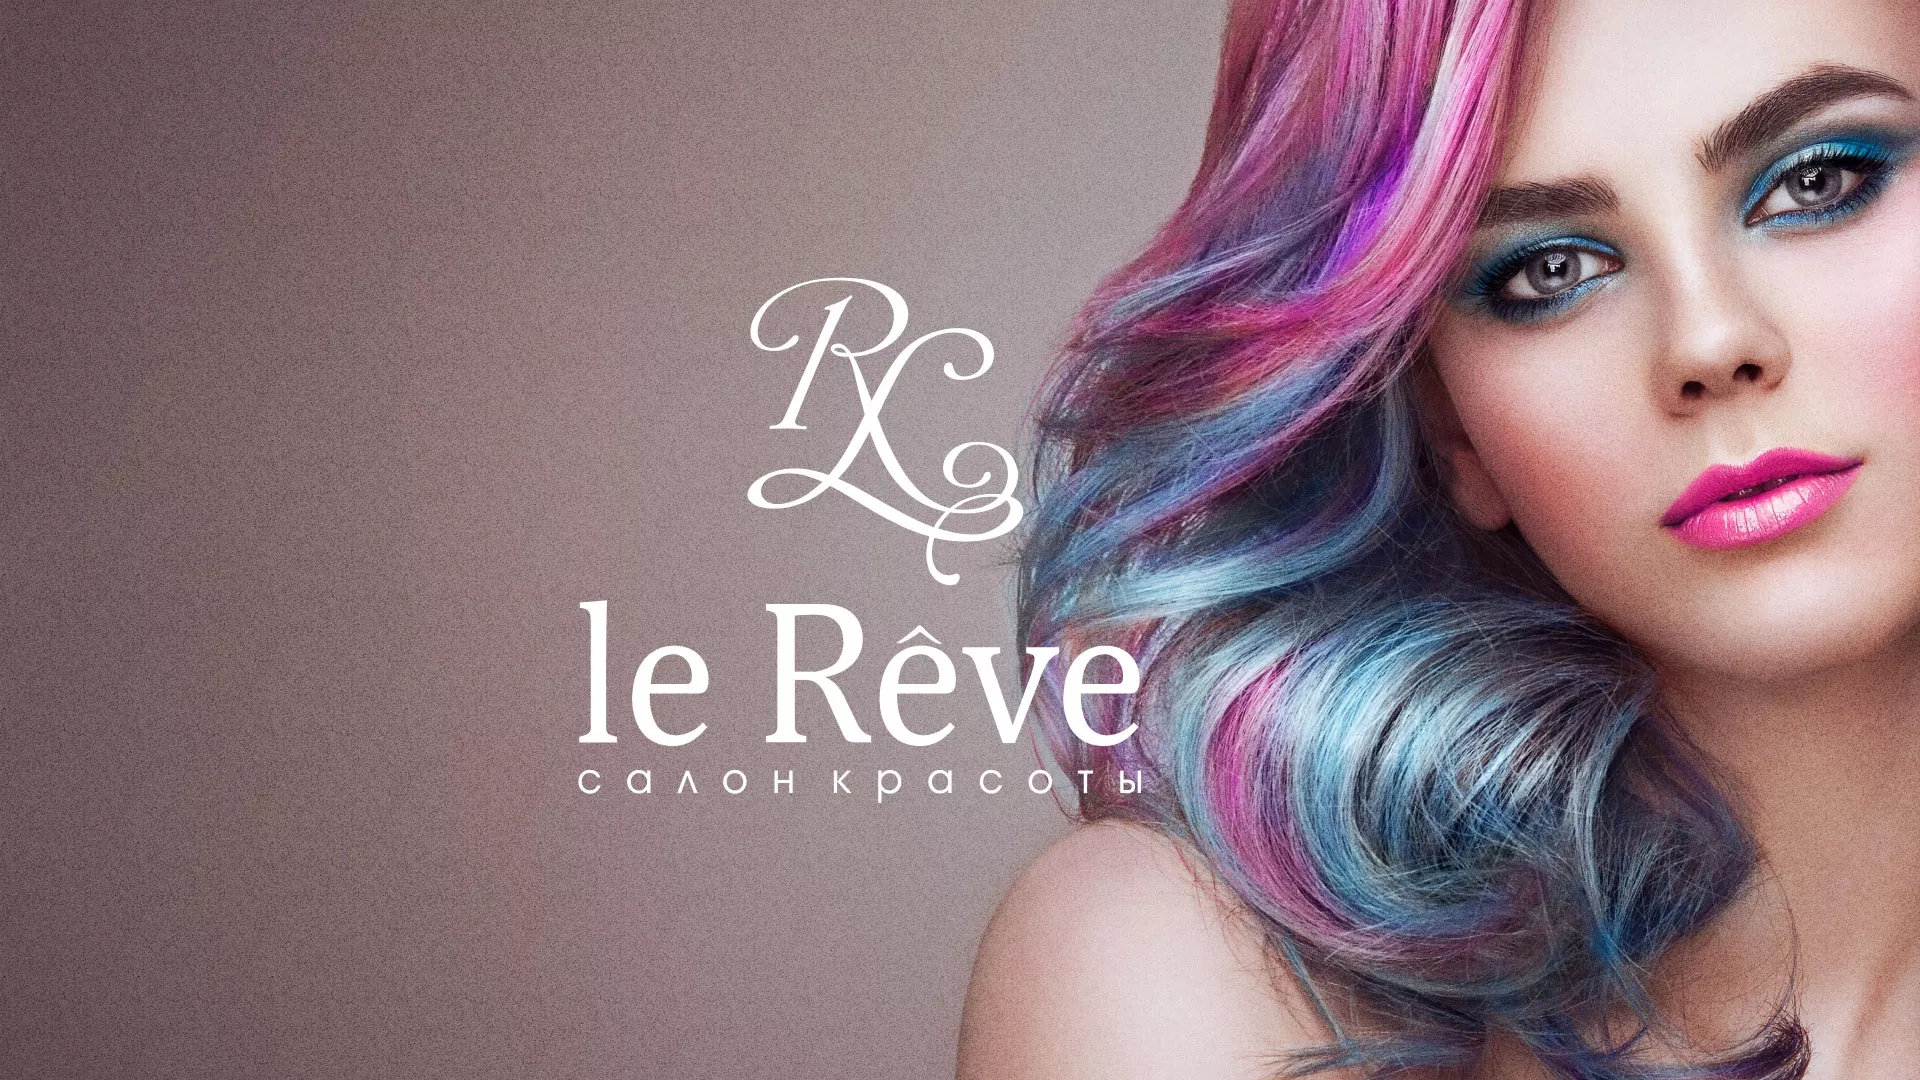 Создание сайта для салона красоты «Le Reve» в Люберцах